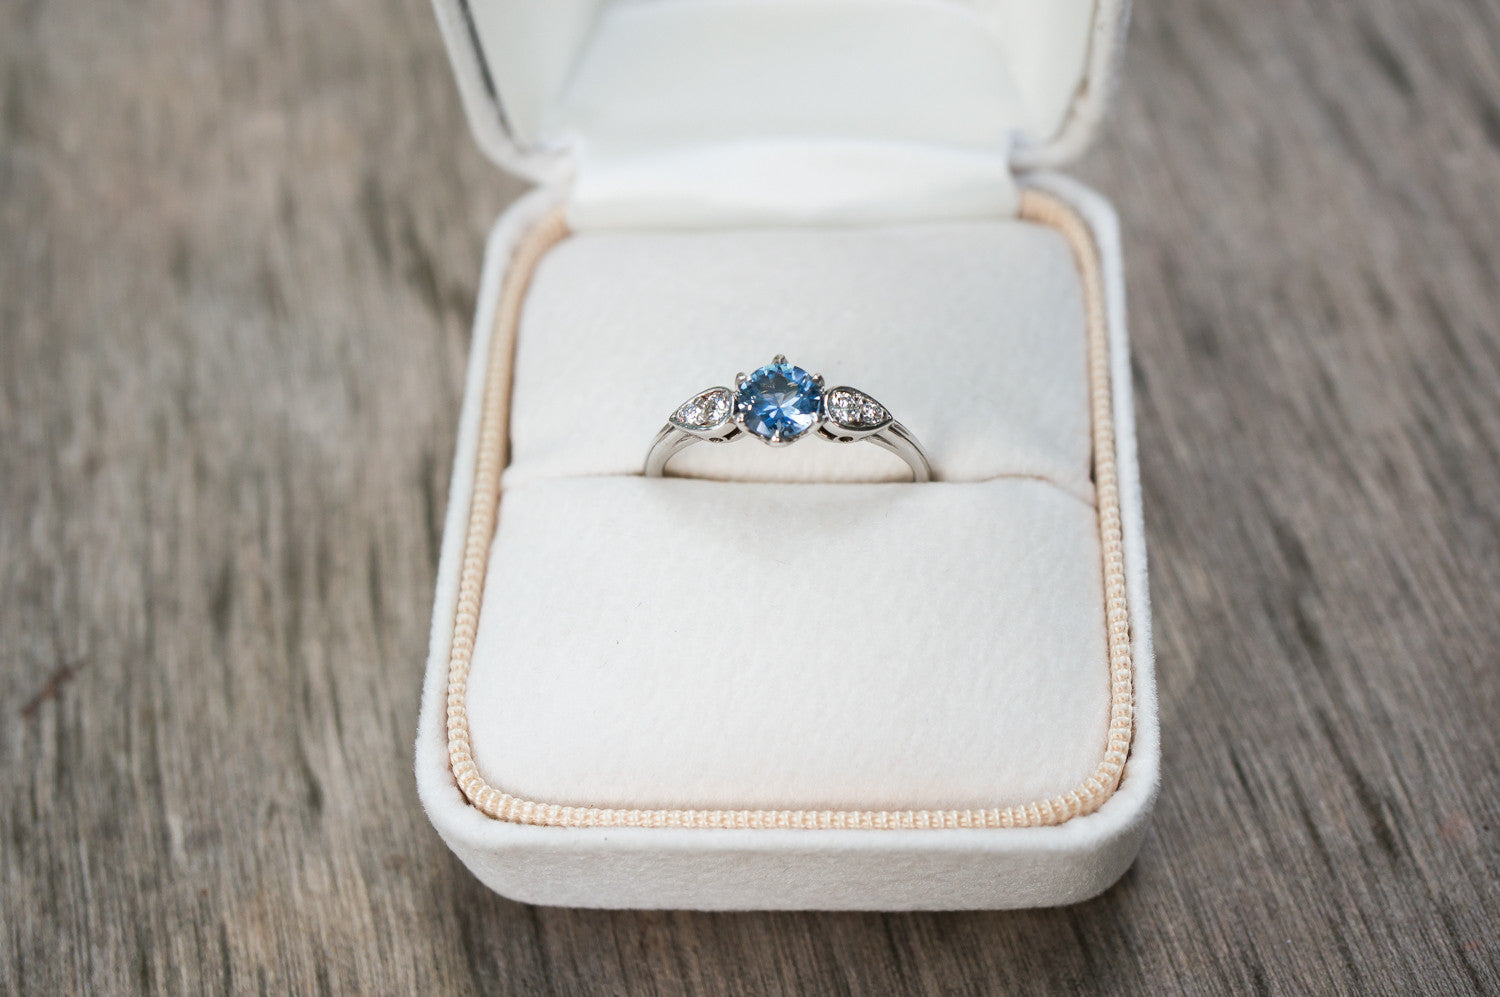 Sky Blue Montana Sapphire and Diamond Ring - S. Kind & Co